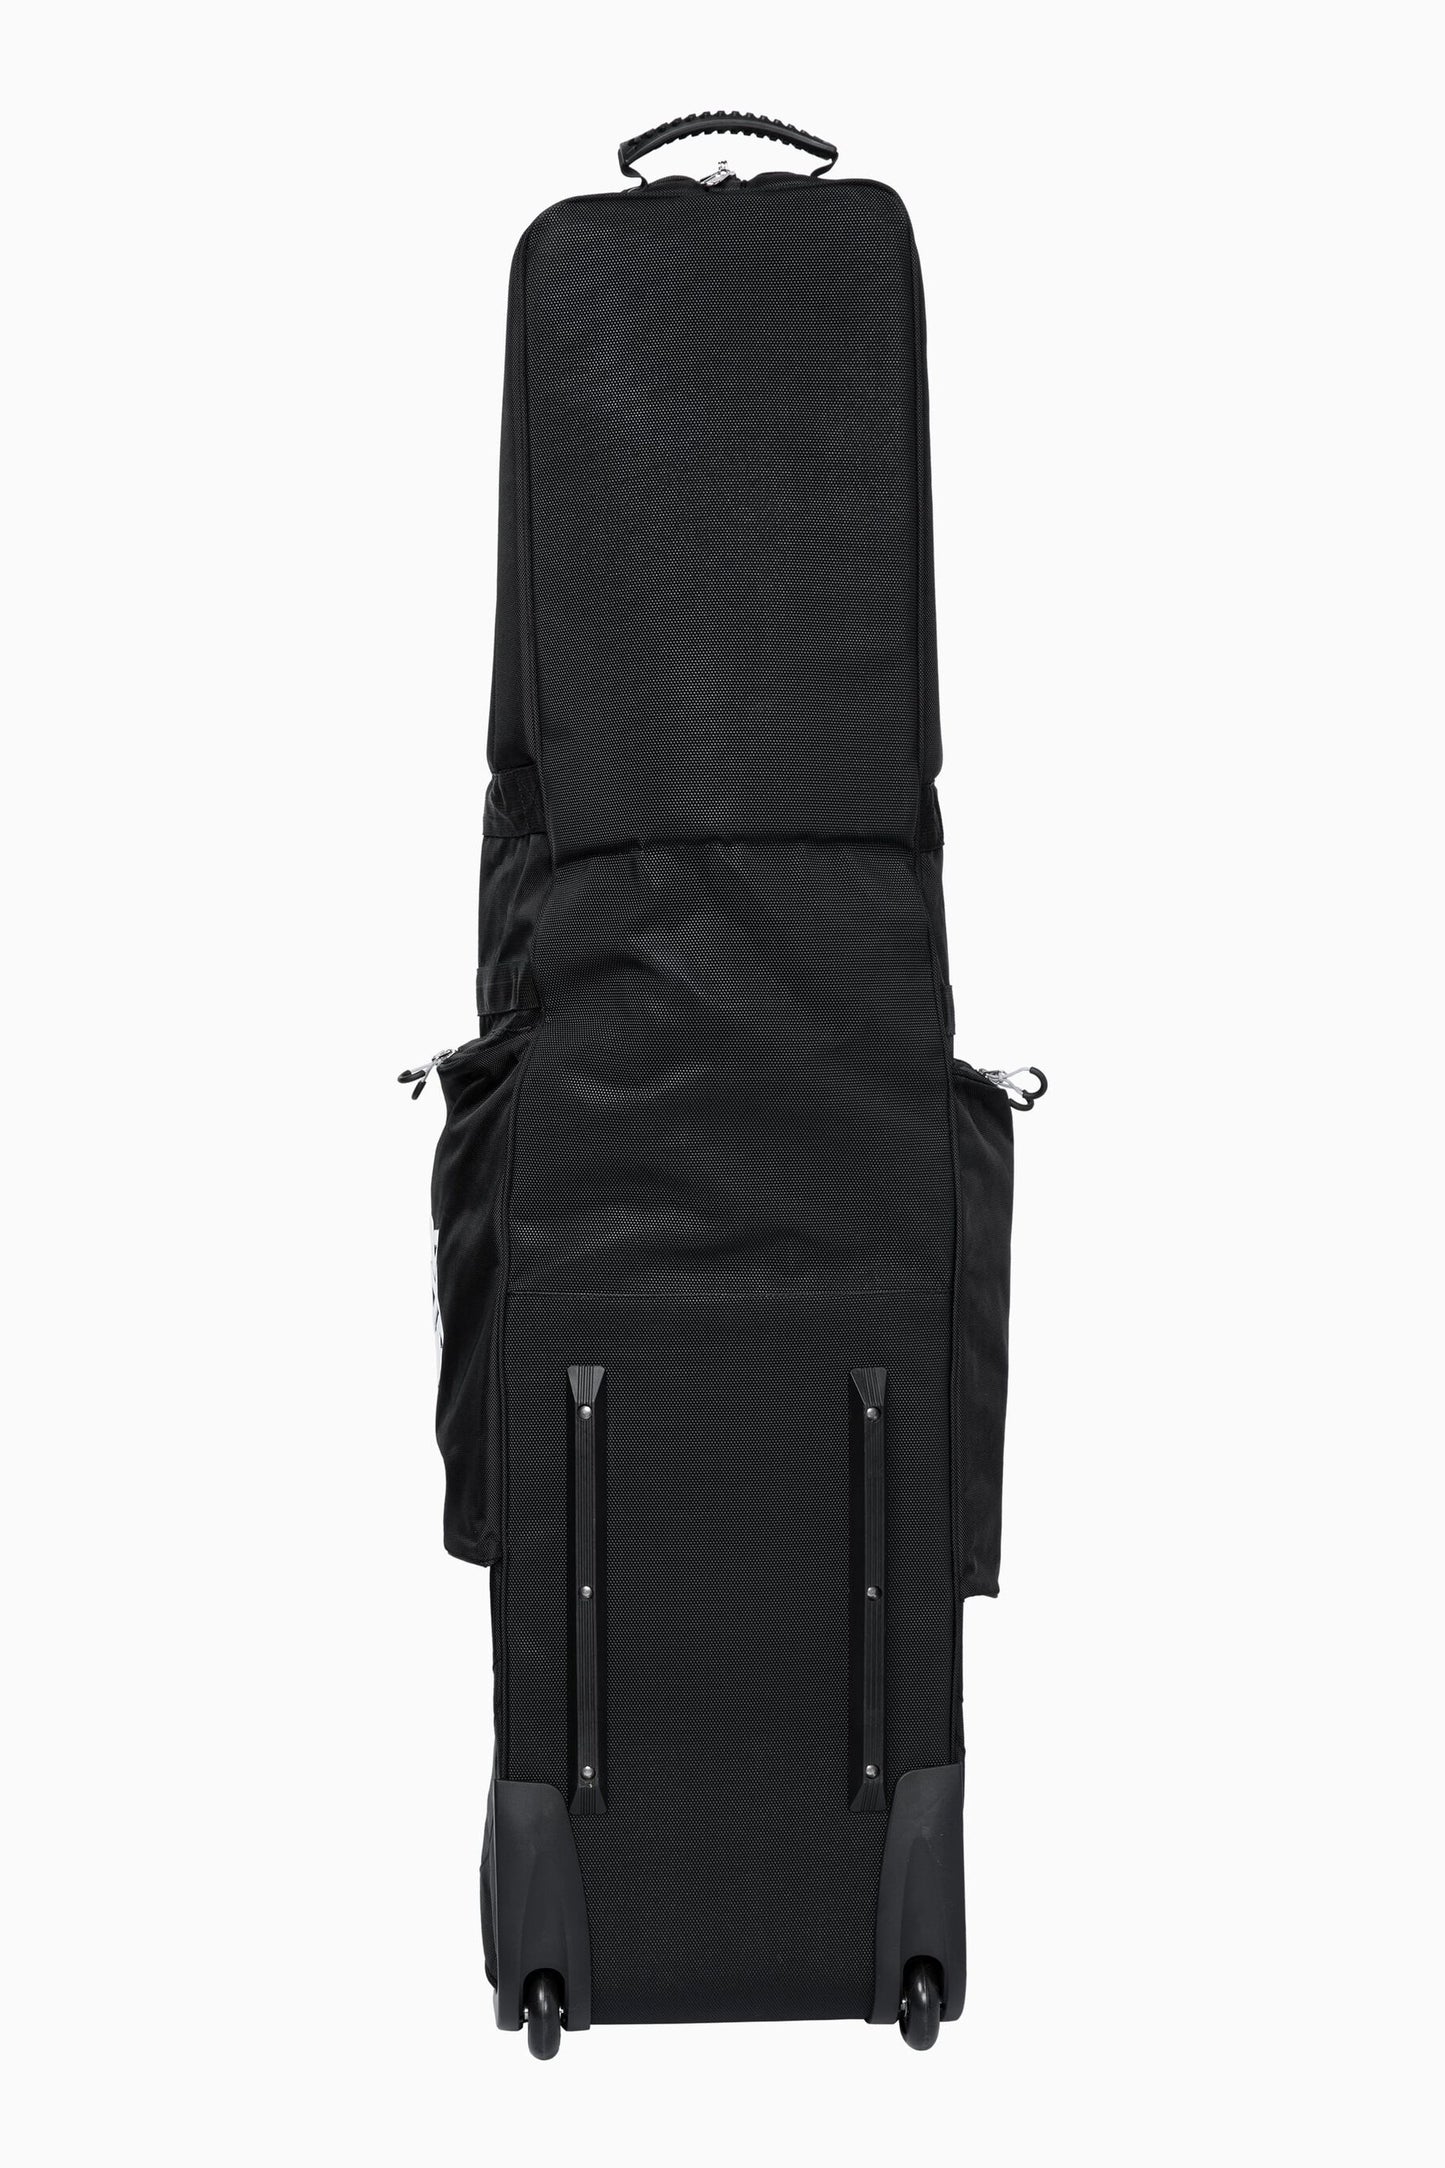 PXG Golf Black Travel Cover Bag   